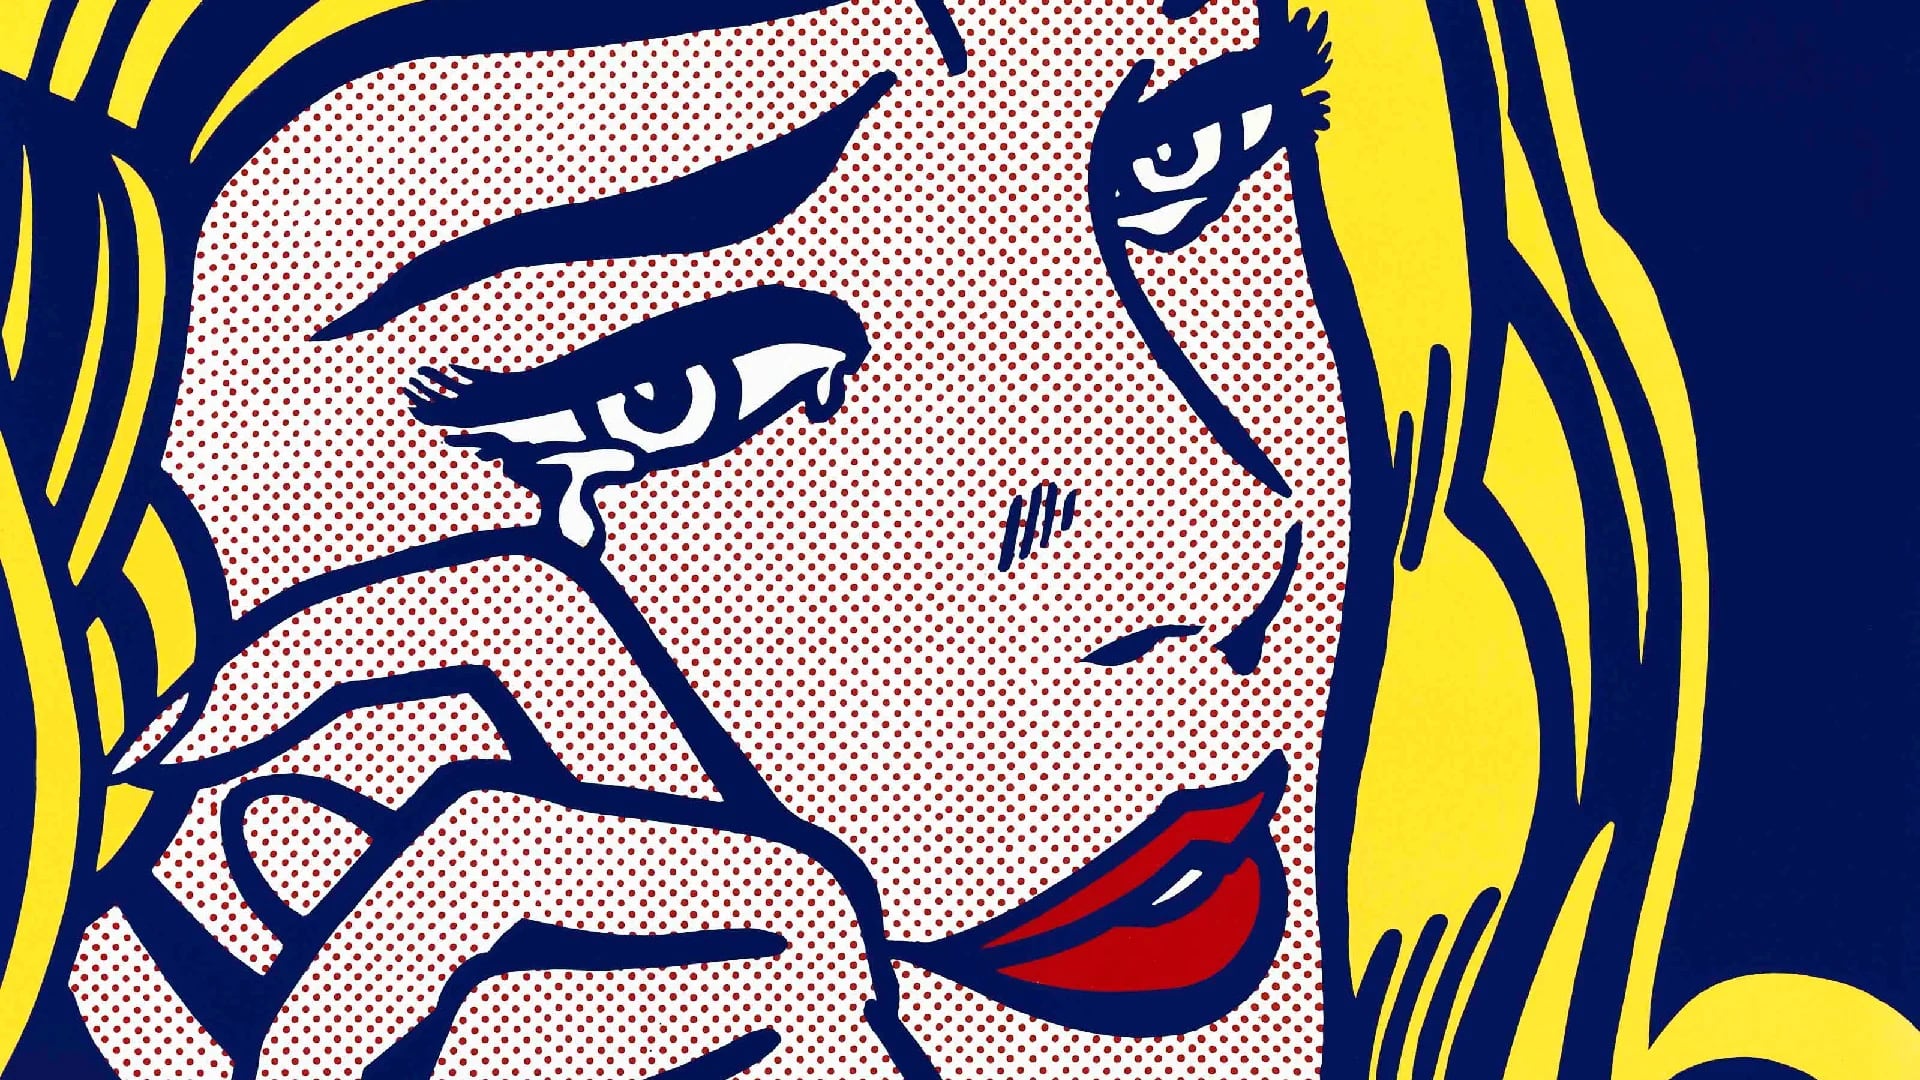 La belleza del día: “Mujer llorando”, de Roy Lichtenstein - Infobae